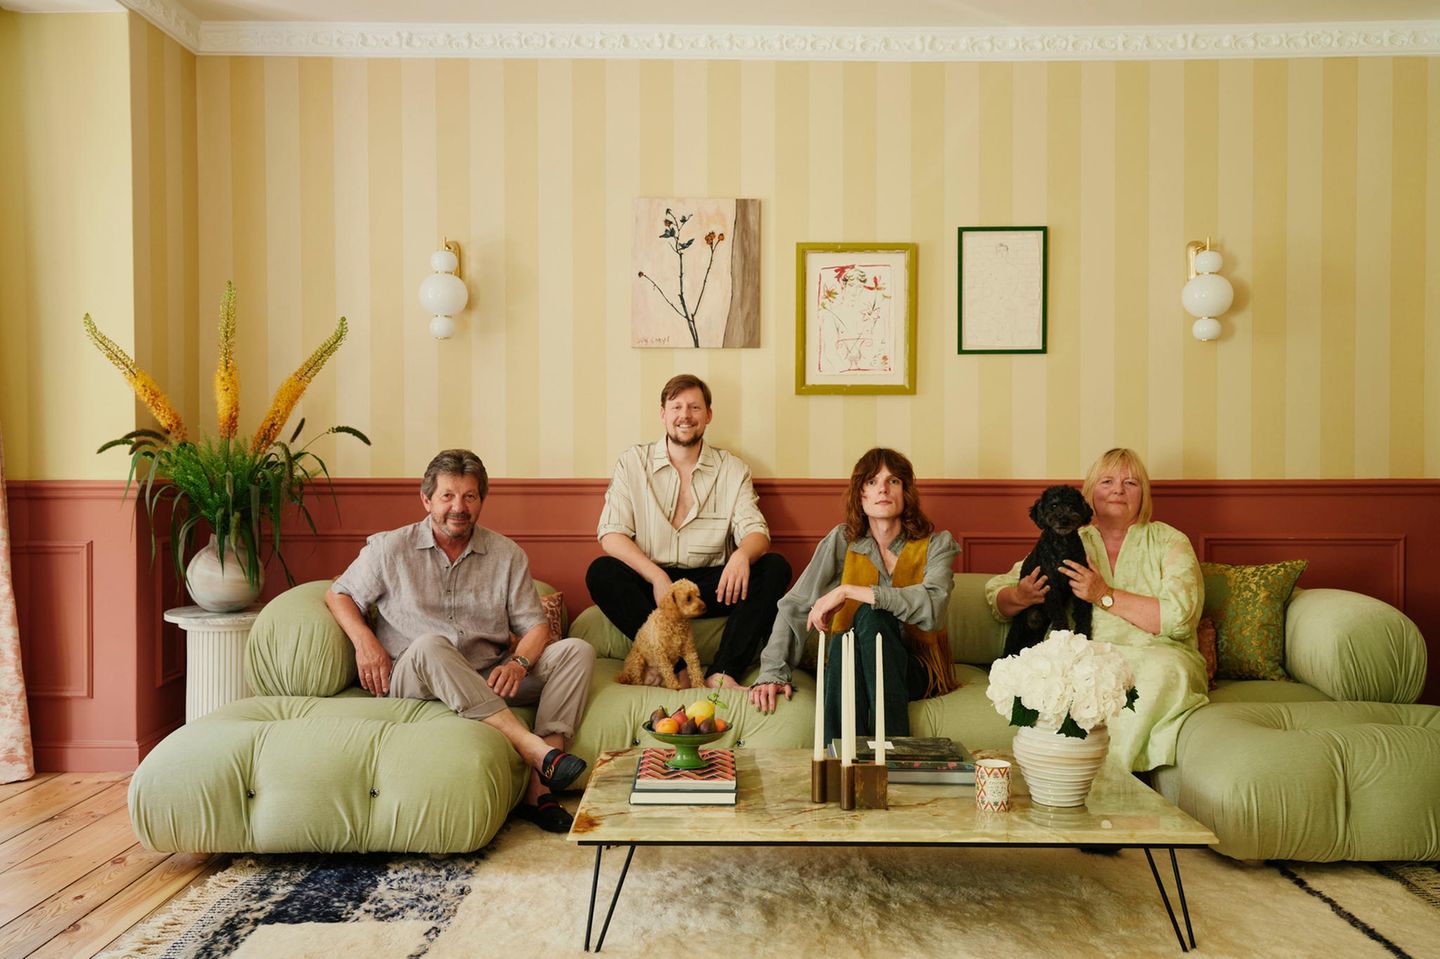 Wohnzimmer im eklektischen Stil mit Familie auf dem Sofa